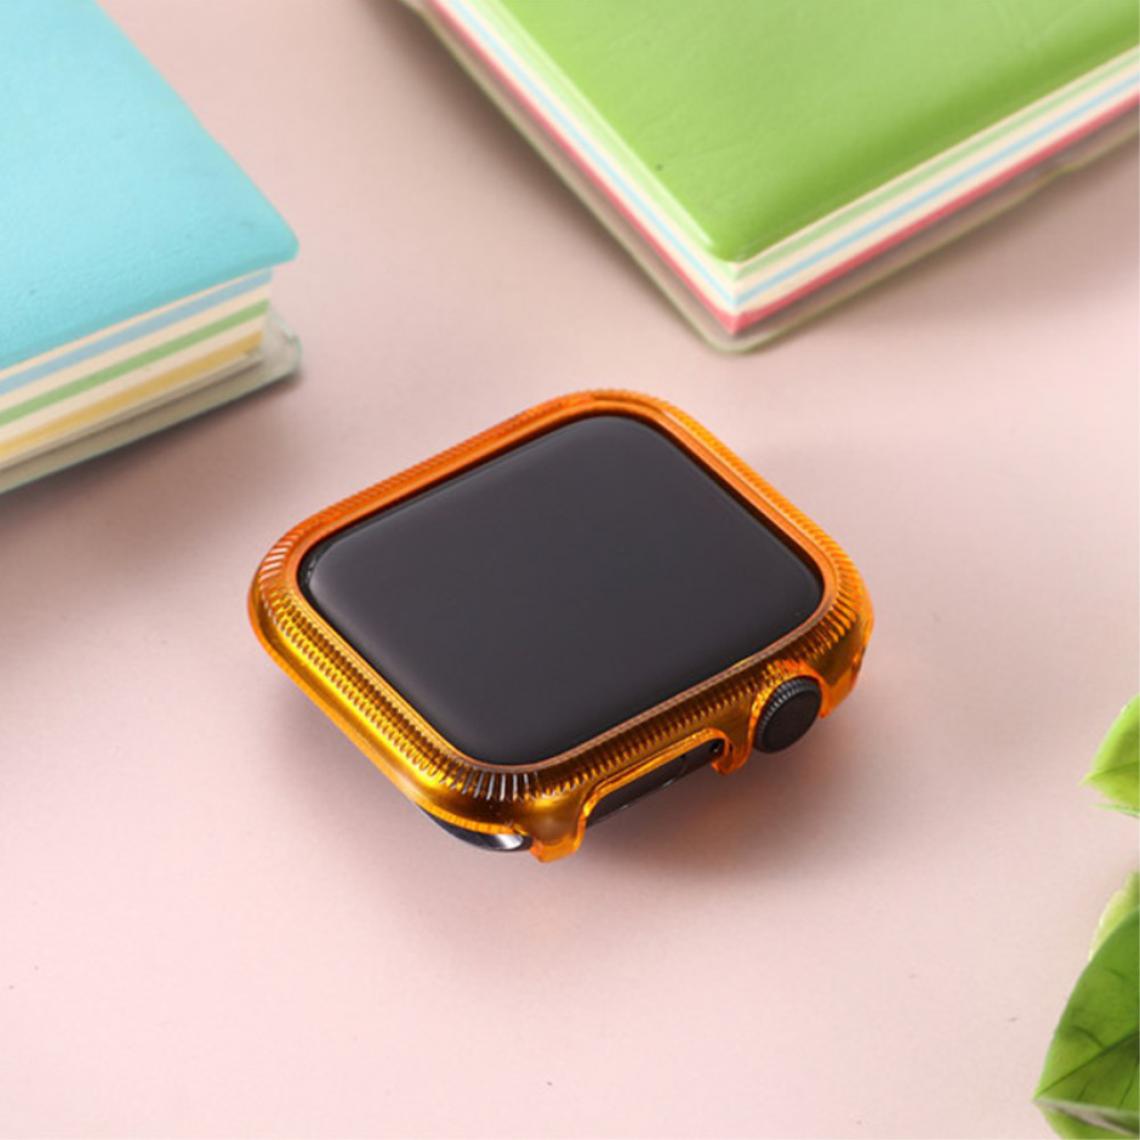 Other - Coque en TPU cadre coloré orange pour votre Apple Watch Series 6/SE/5/4 40mm - Accessoires bracelet connecté